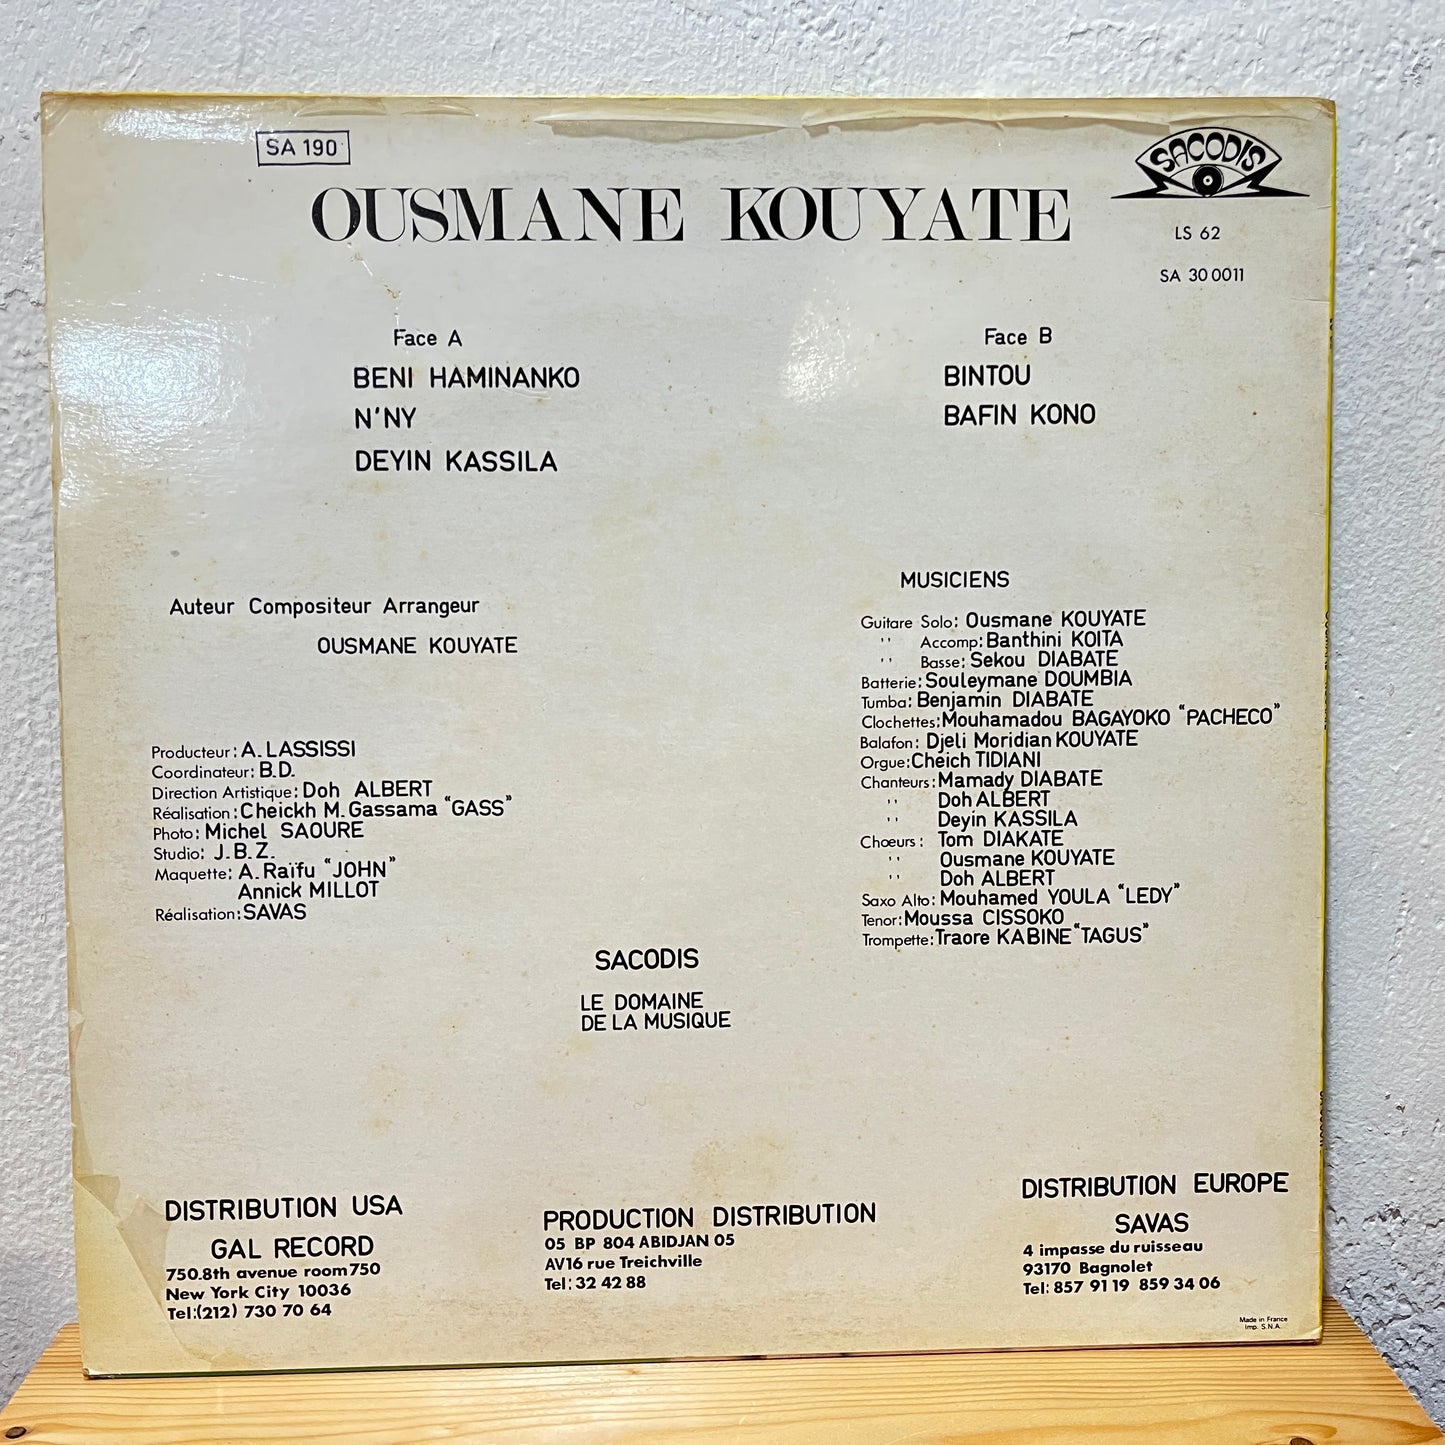 Ousmane Kouyate – Revelation 82